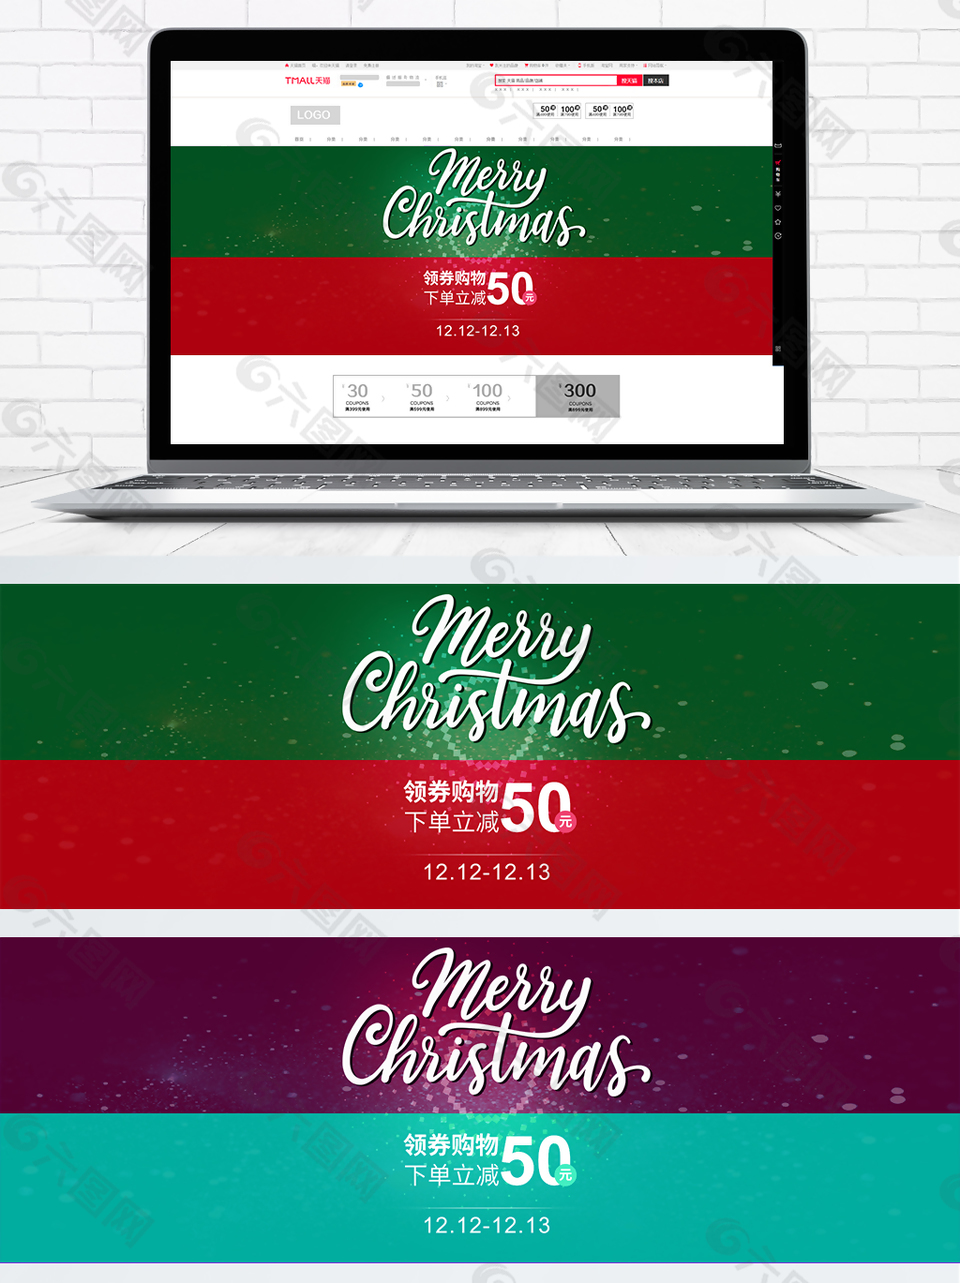 2018年圣诞节促销下单立减5折海报